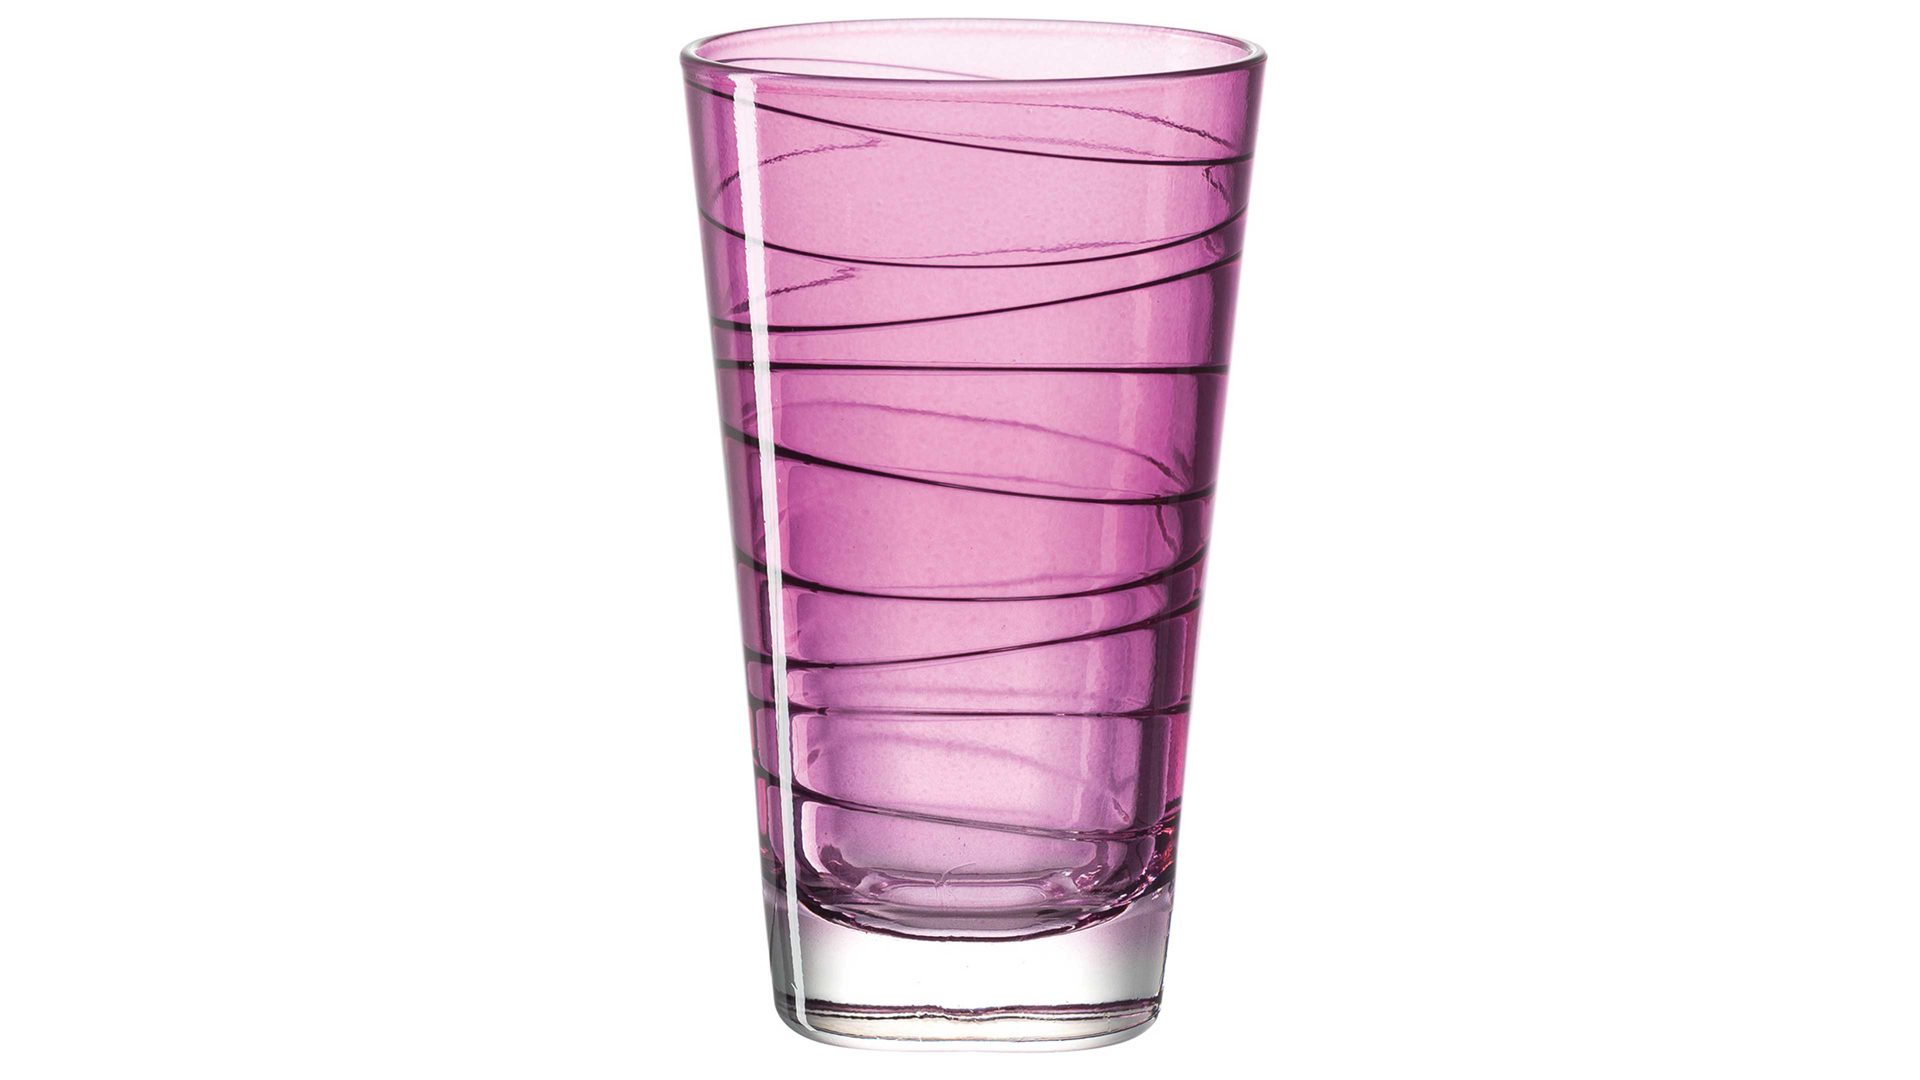 Wasserglas Leonardo | glaskoch aus Glas in Lila LEONARDO großer Glasbecher Vario violettes Strukturlackglas - ca. 200 ml Nutzinhalt